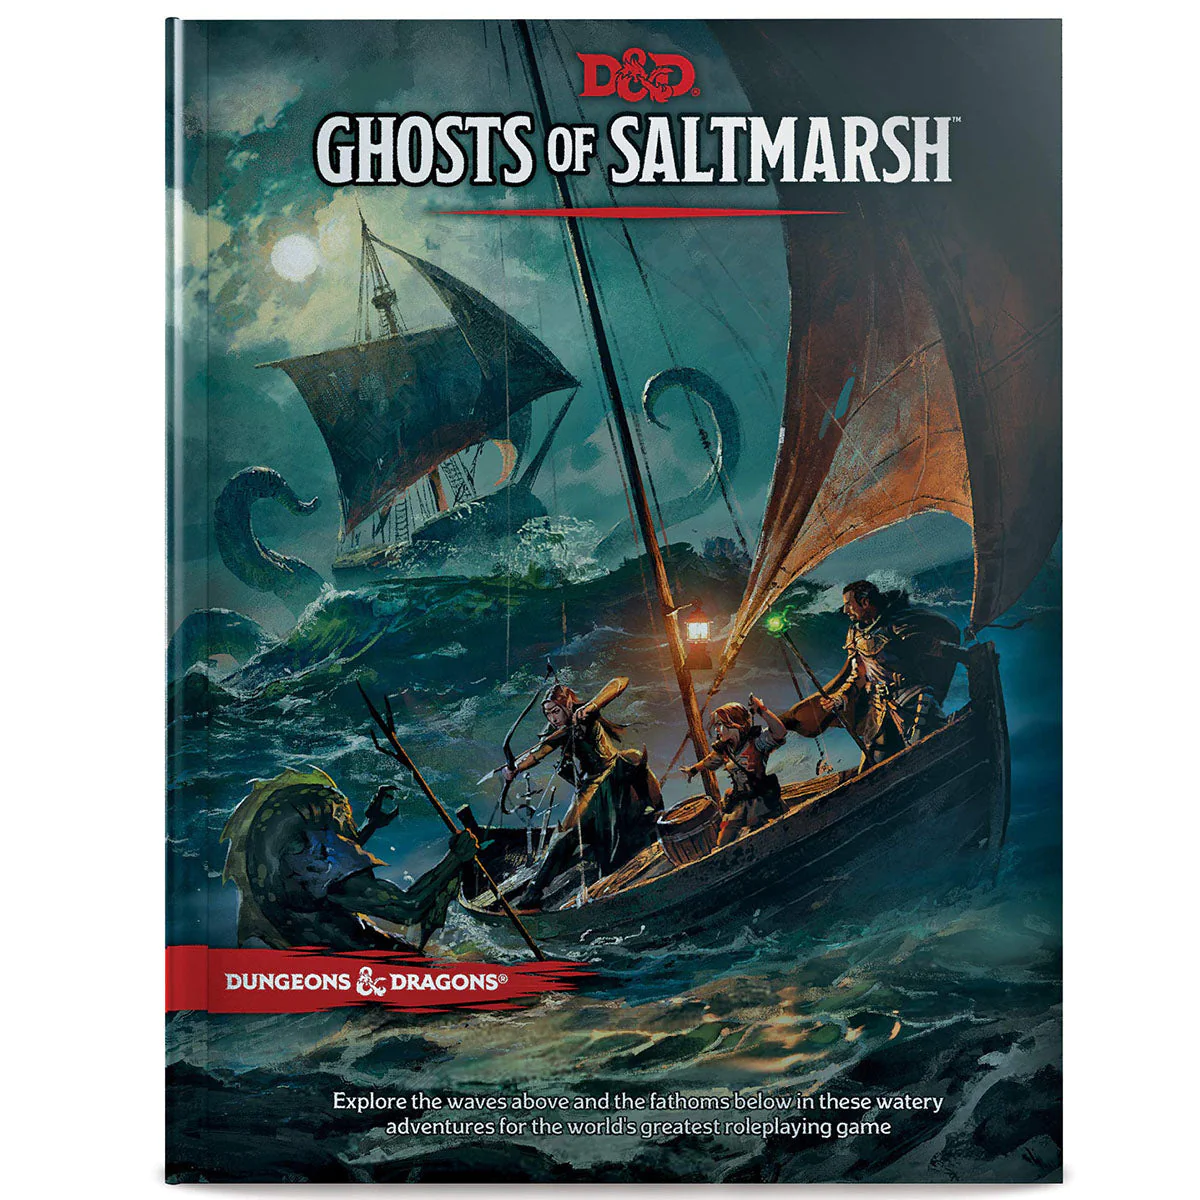 D&D Ghosts of Saltmarsh RPG book